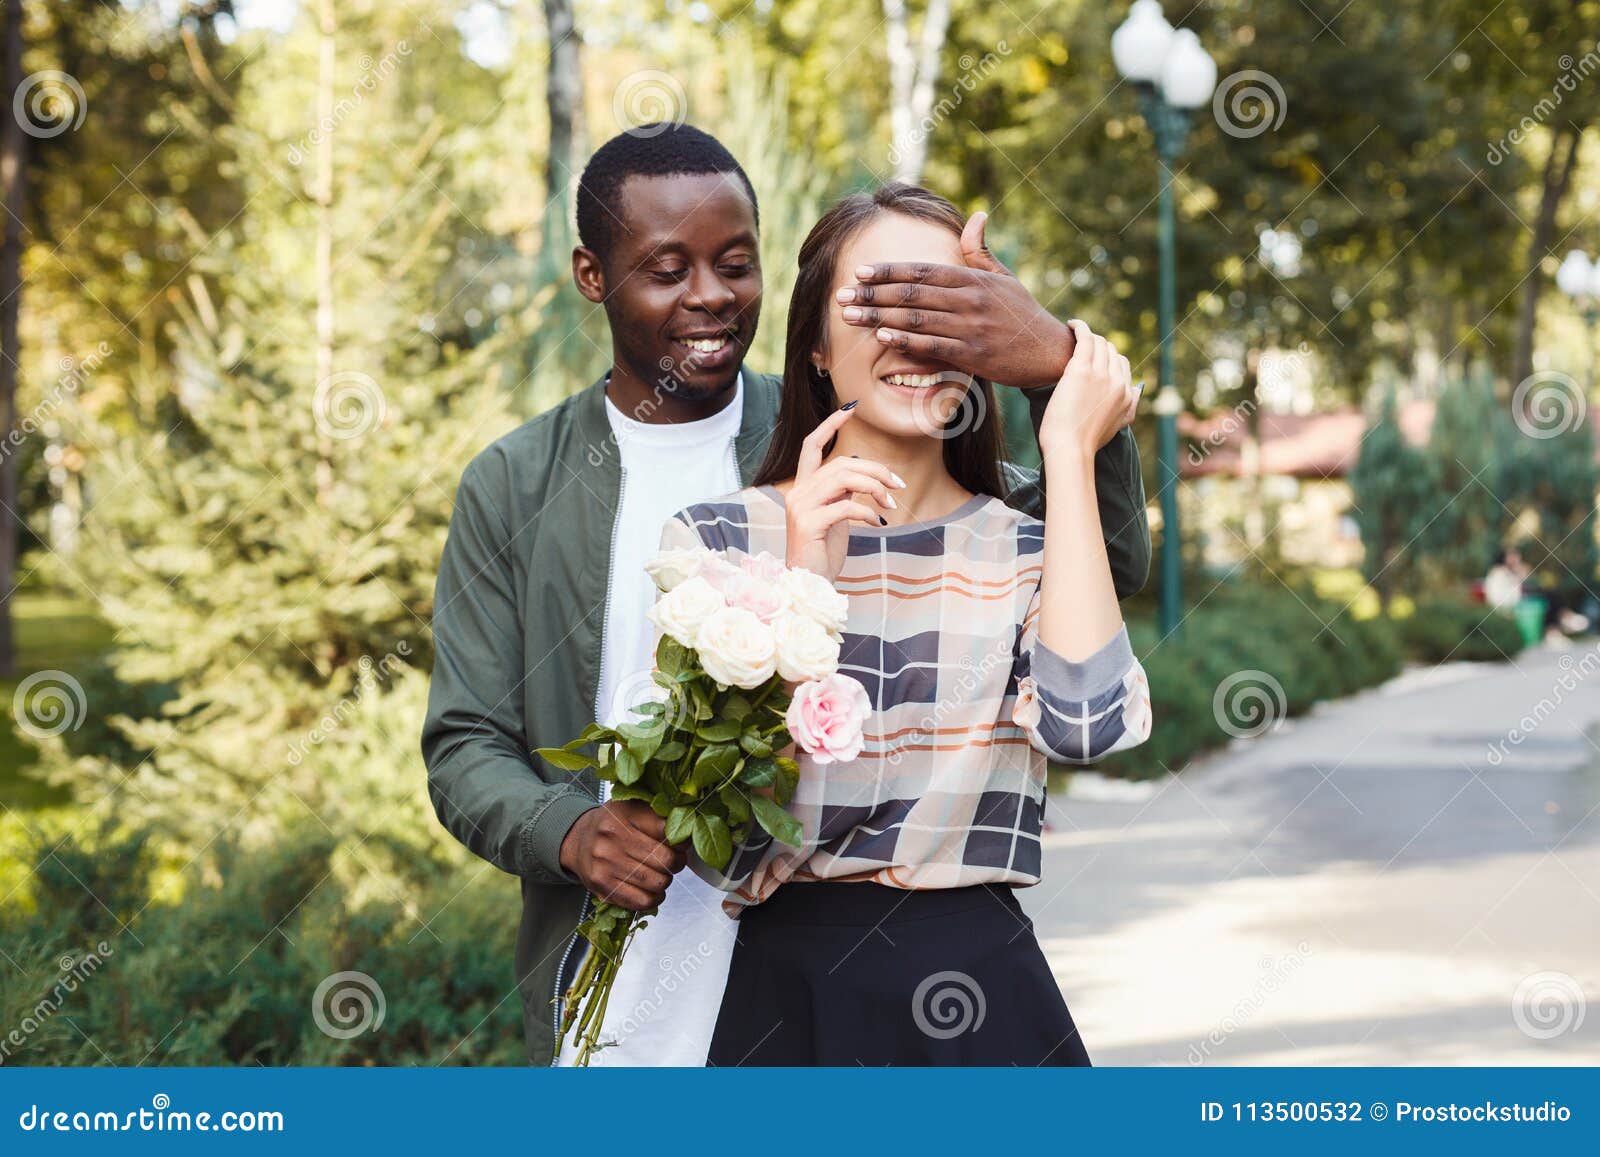 Homem surprising sua amiga com flores. Os homens afro-americanos novos com as flores que fecham sua amiga eyes para fazer a surpresa para ela, andando no parque